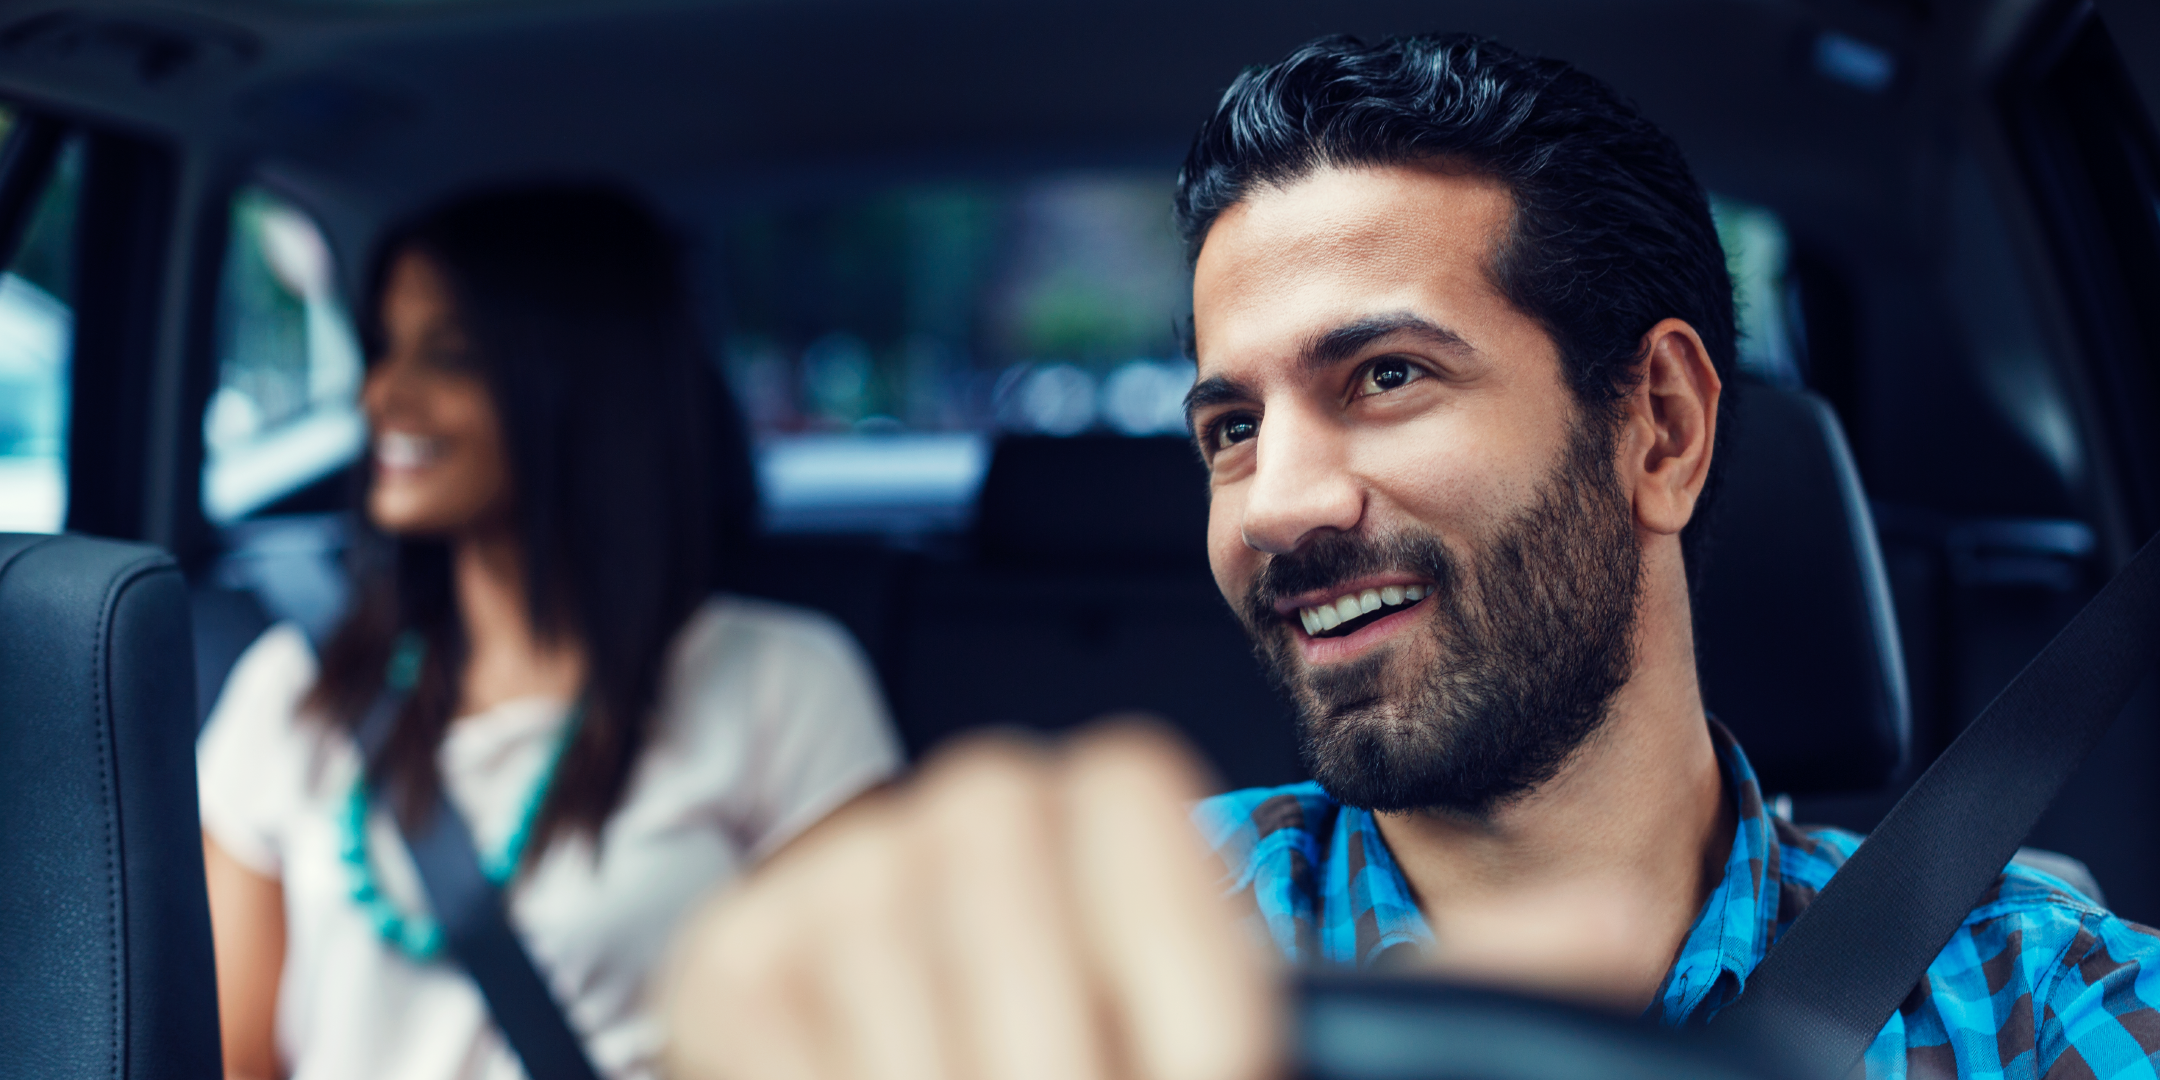 Documentación necesaria para inscribirse como conductor en Uber